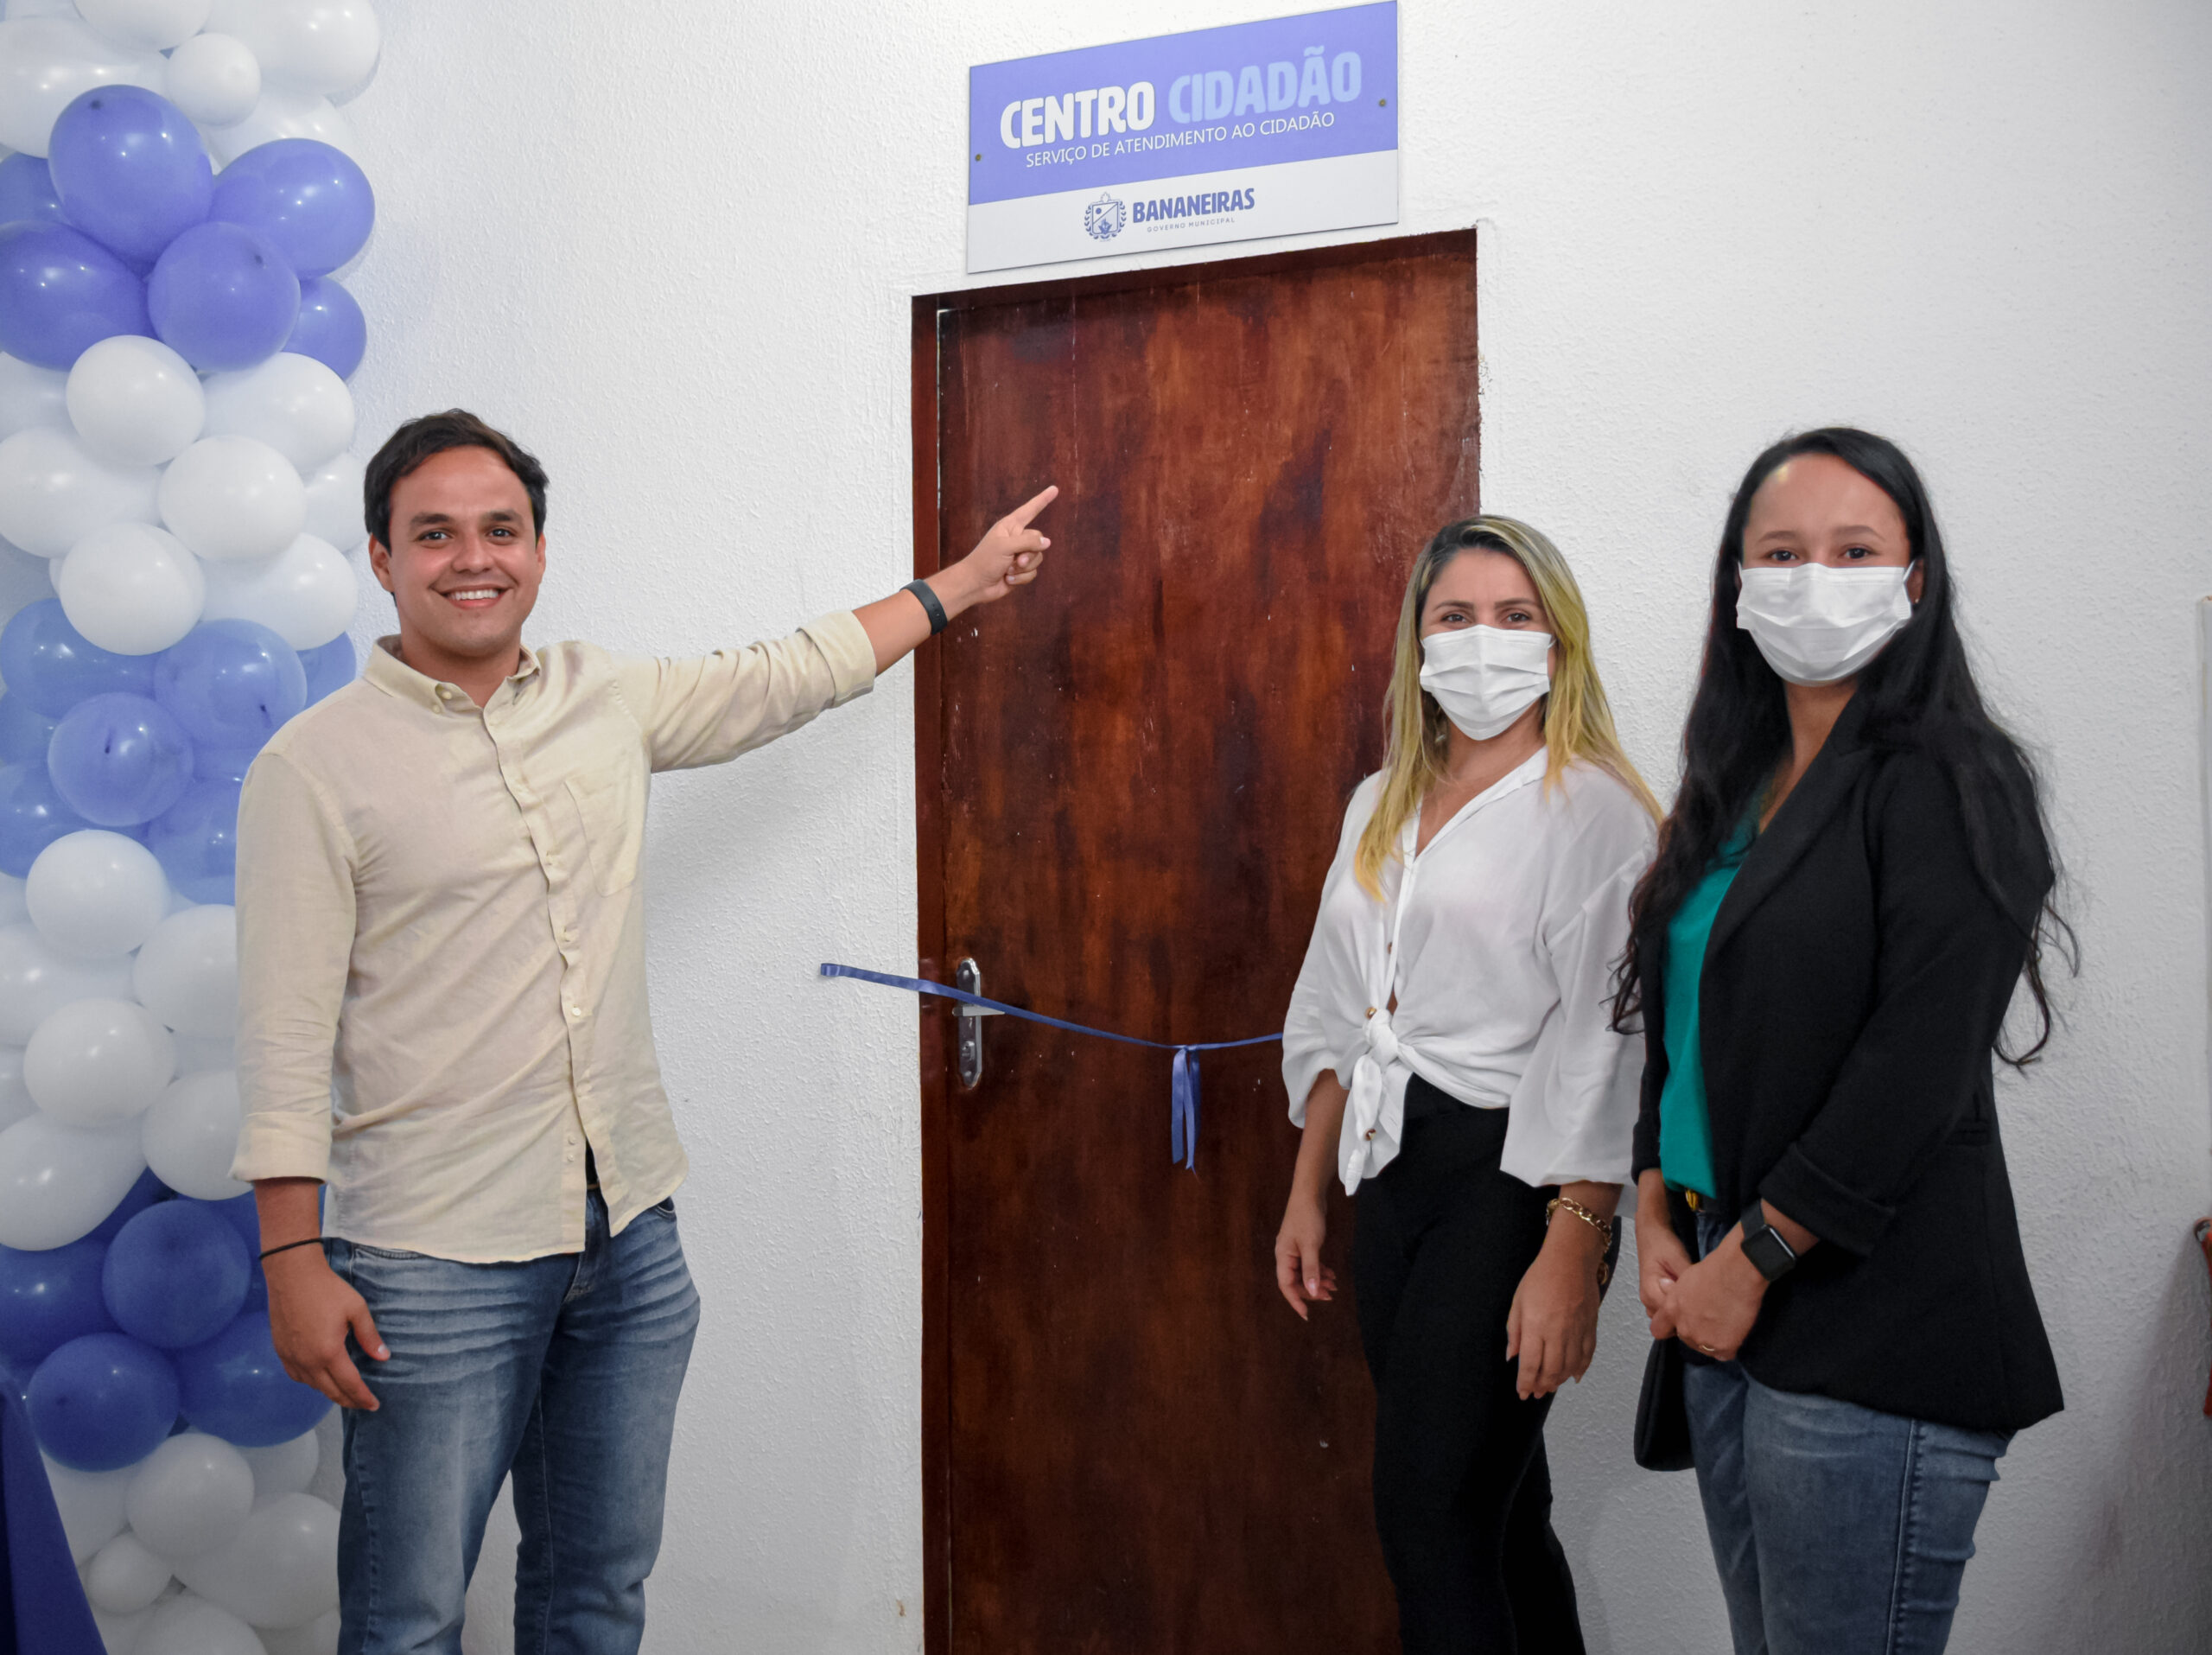 Prefeito Matheus Bezerra inaugurou Centro Cidadão em Bananeiras